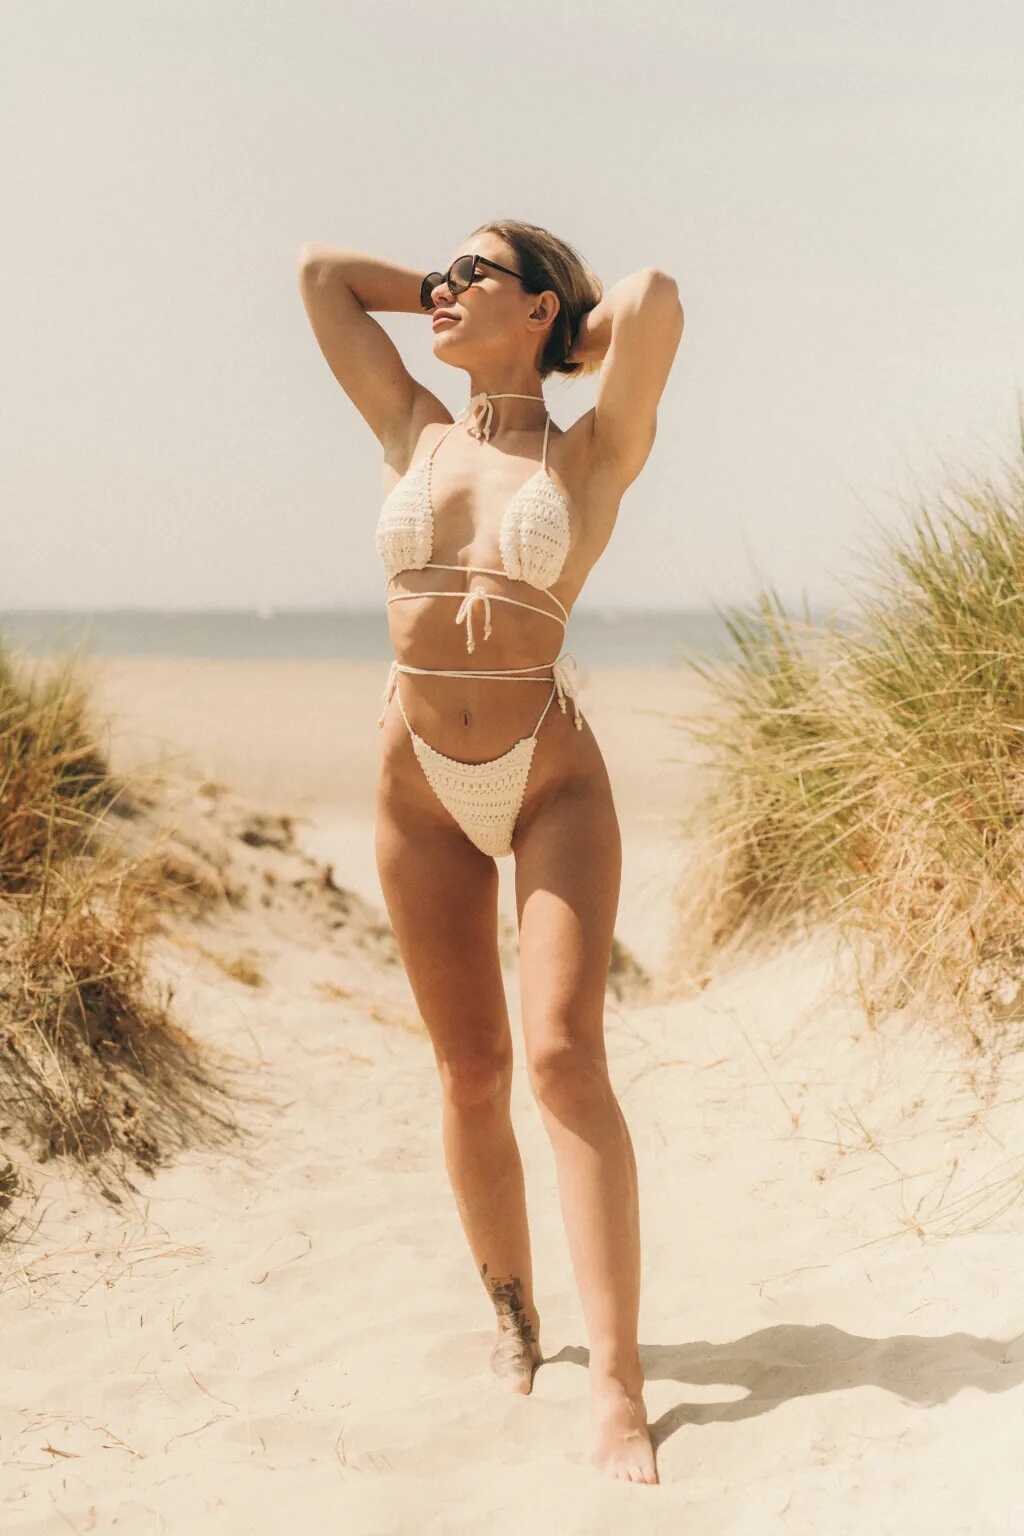 Η μουνάρα μοντέλο Karolina σε topless φωτογραφίες